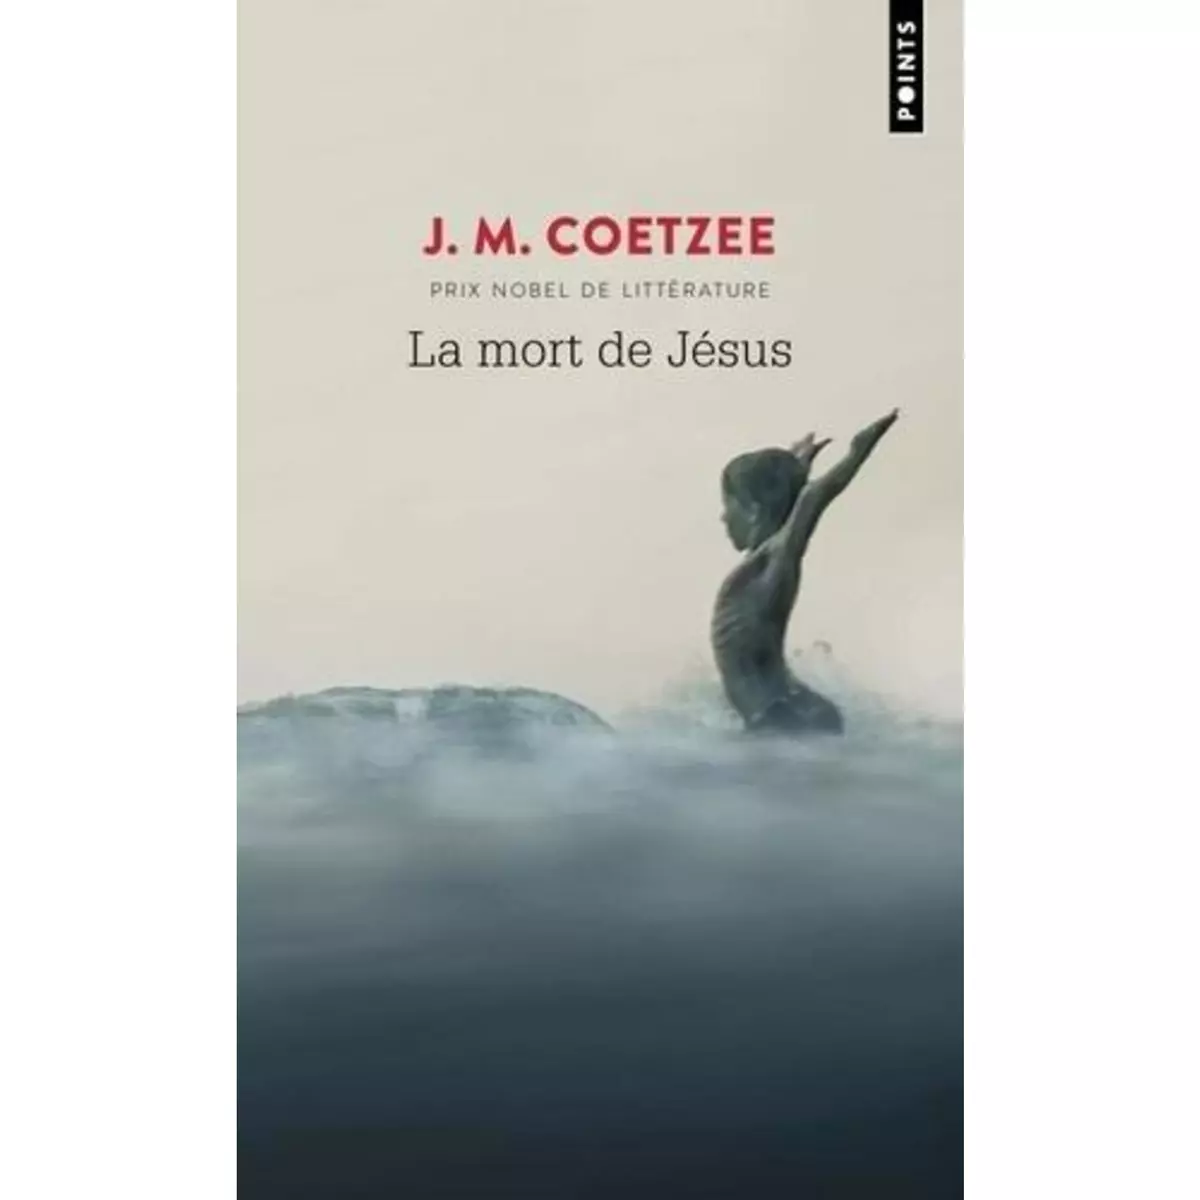  LA MORT DE JESUS, Coetzee J. M.